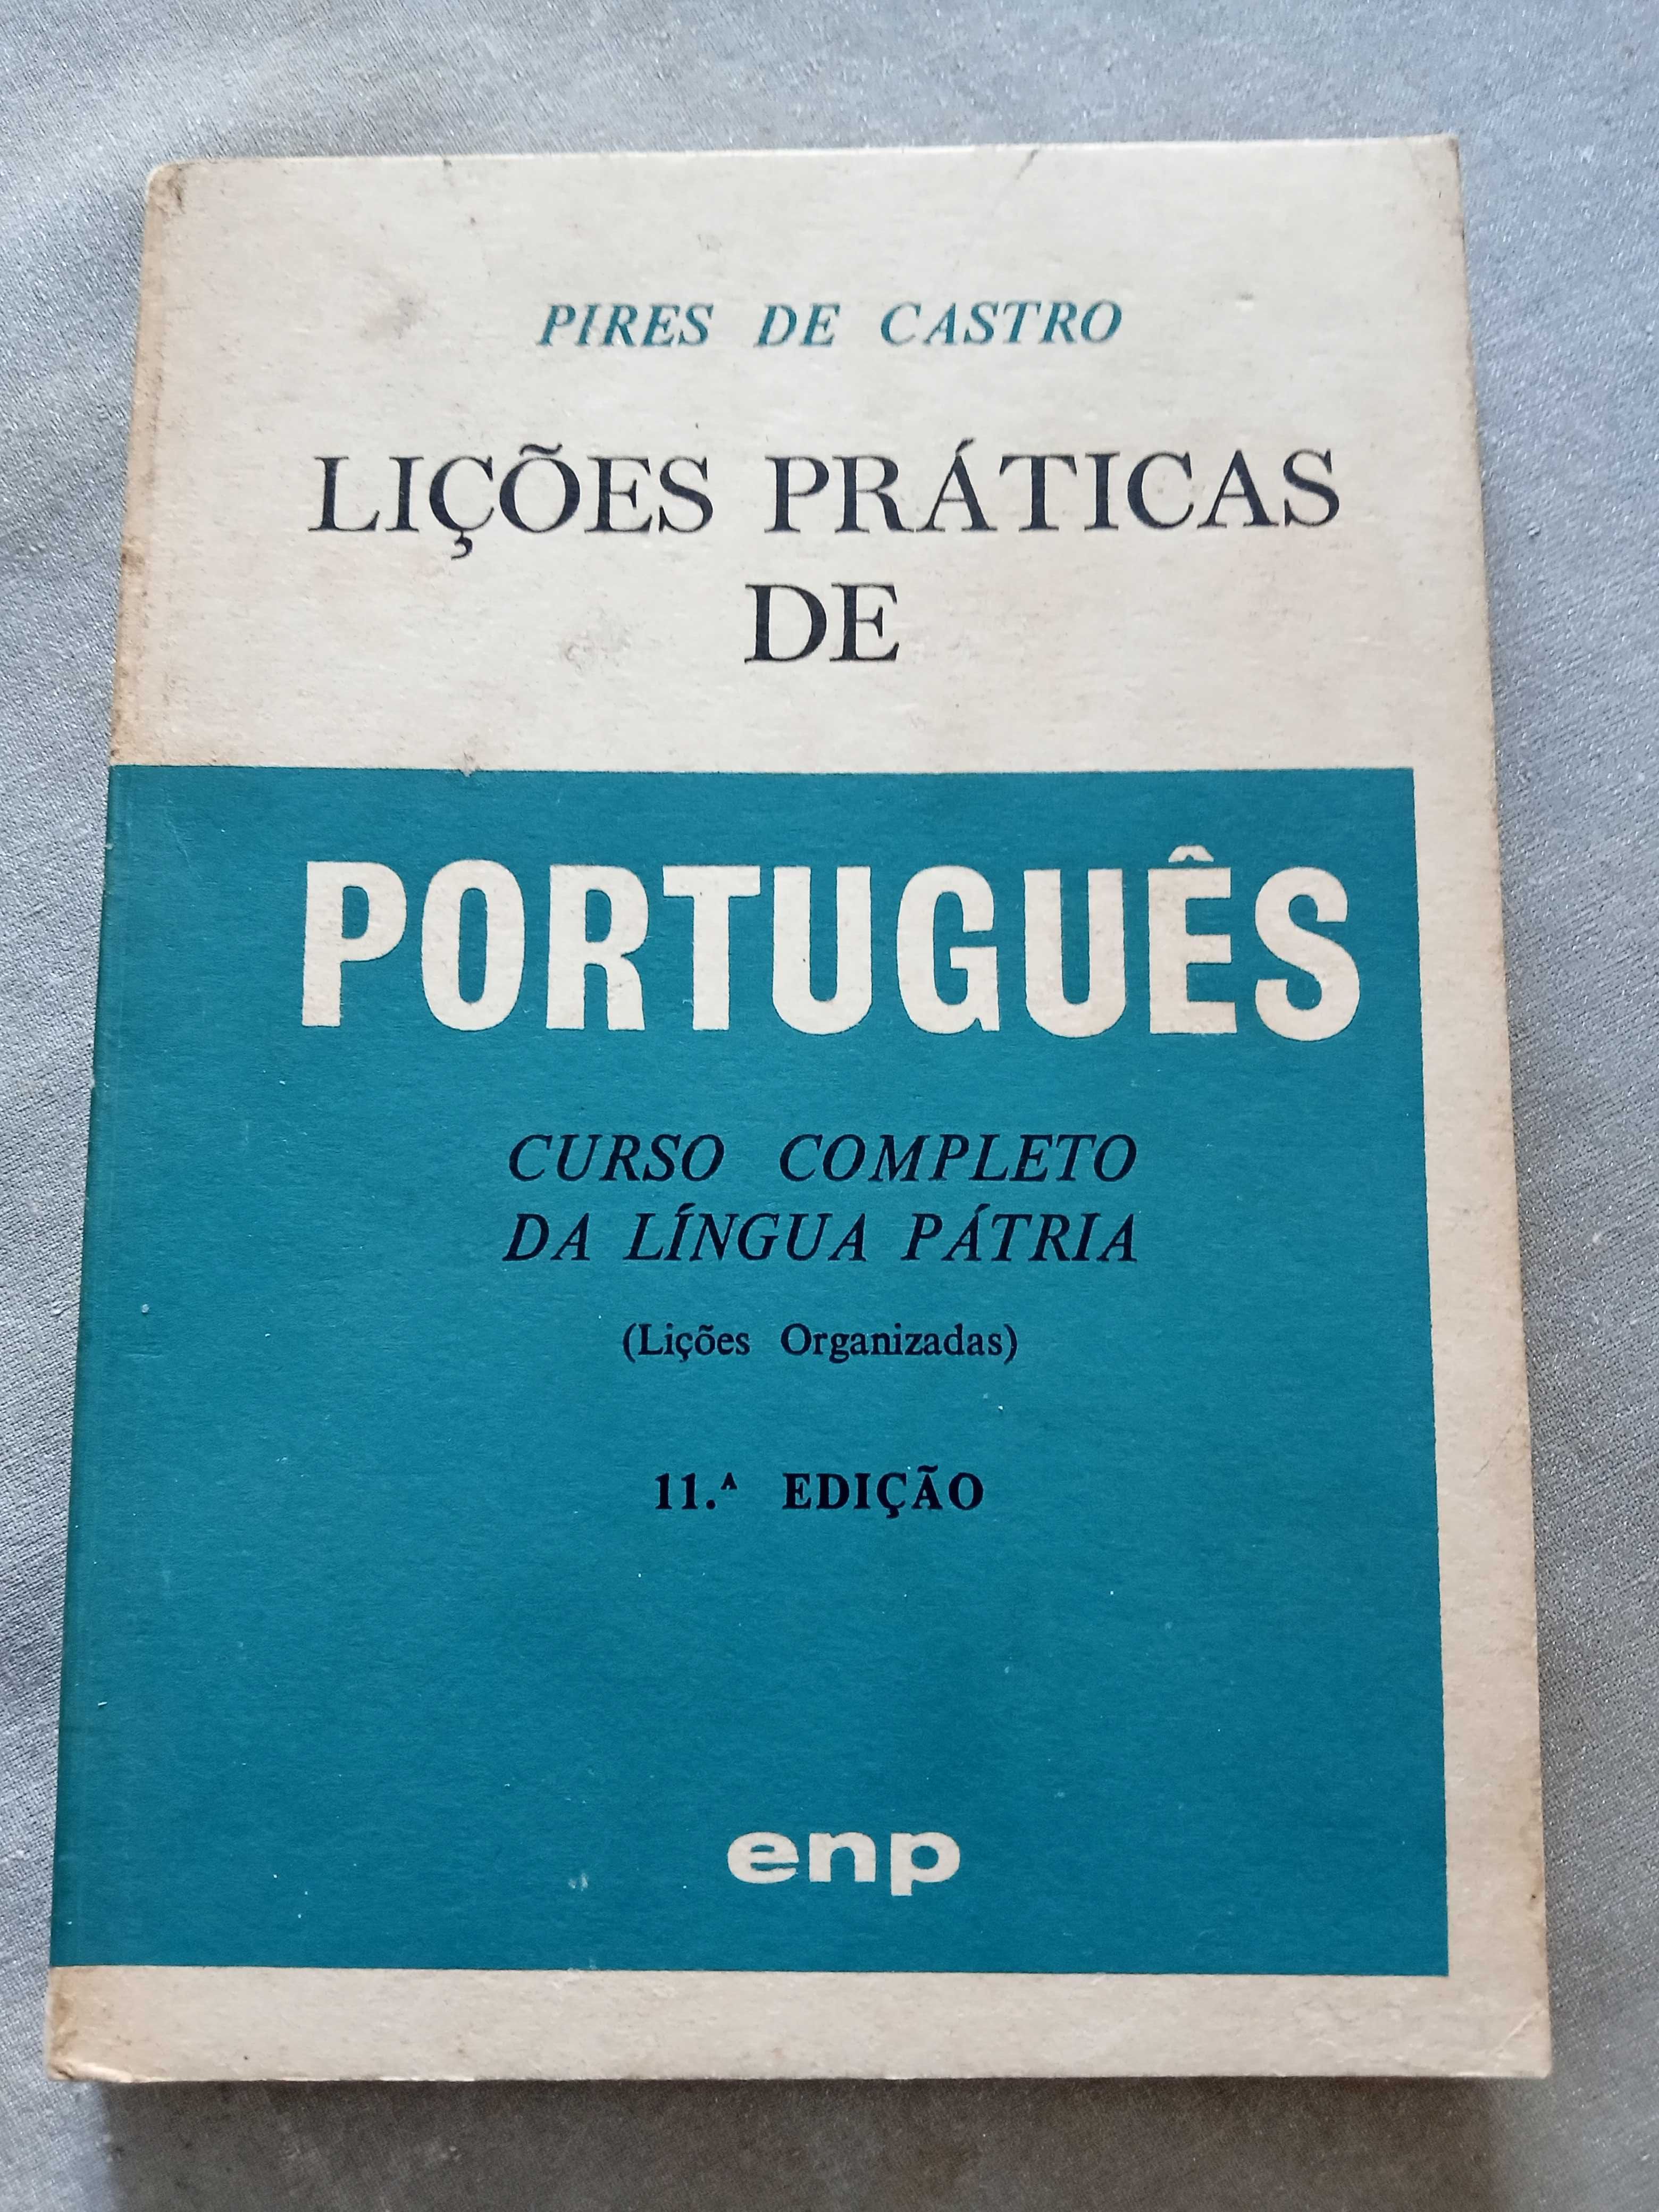 Lições Práticas de Português Pires de Castro 11 edição ENP